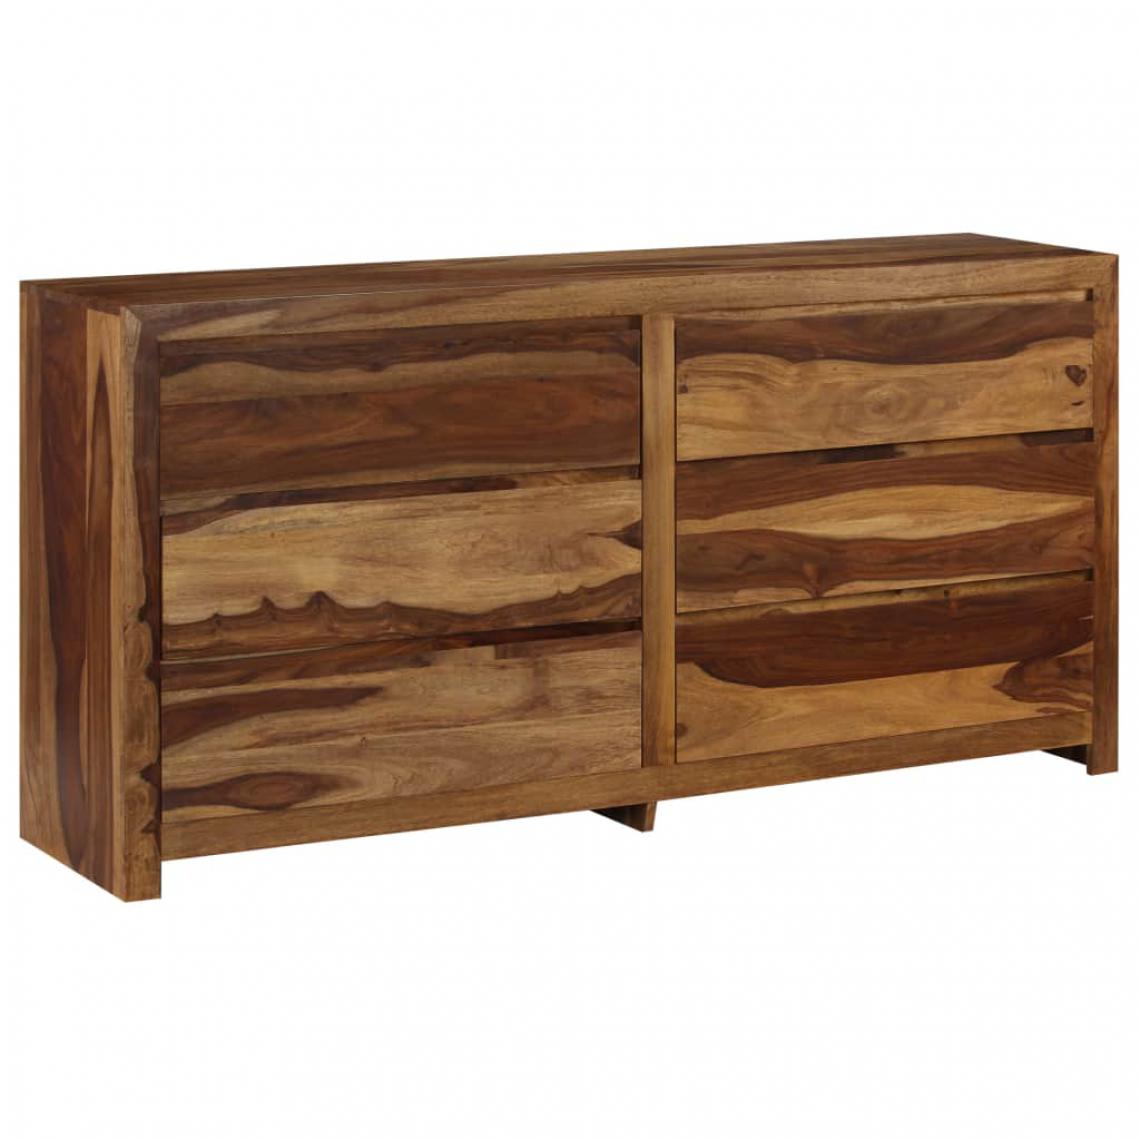 Helloshop26 - Buffet bahut armoire console meuble de rangement meuble à tiroirs bois massif de sesham 160 cm 4402112 - Consoles